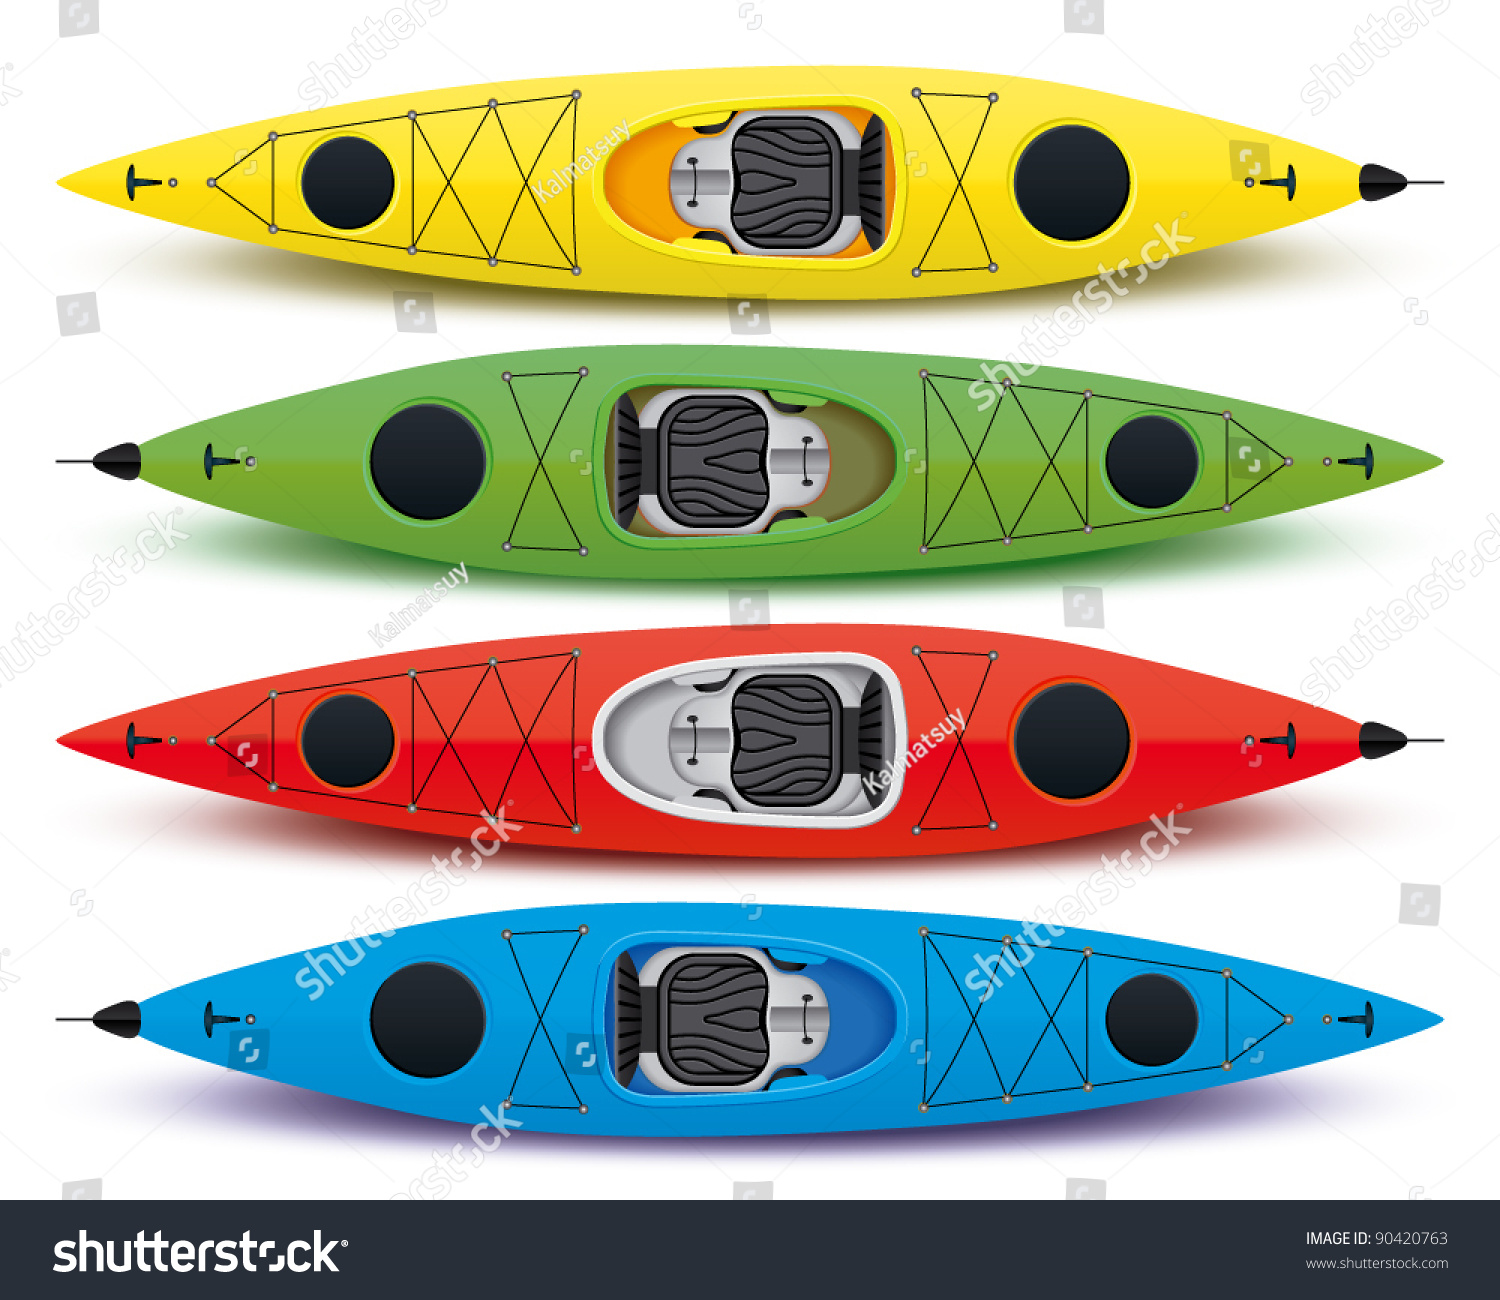 kayak clipart office - photo #39